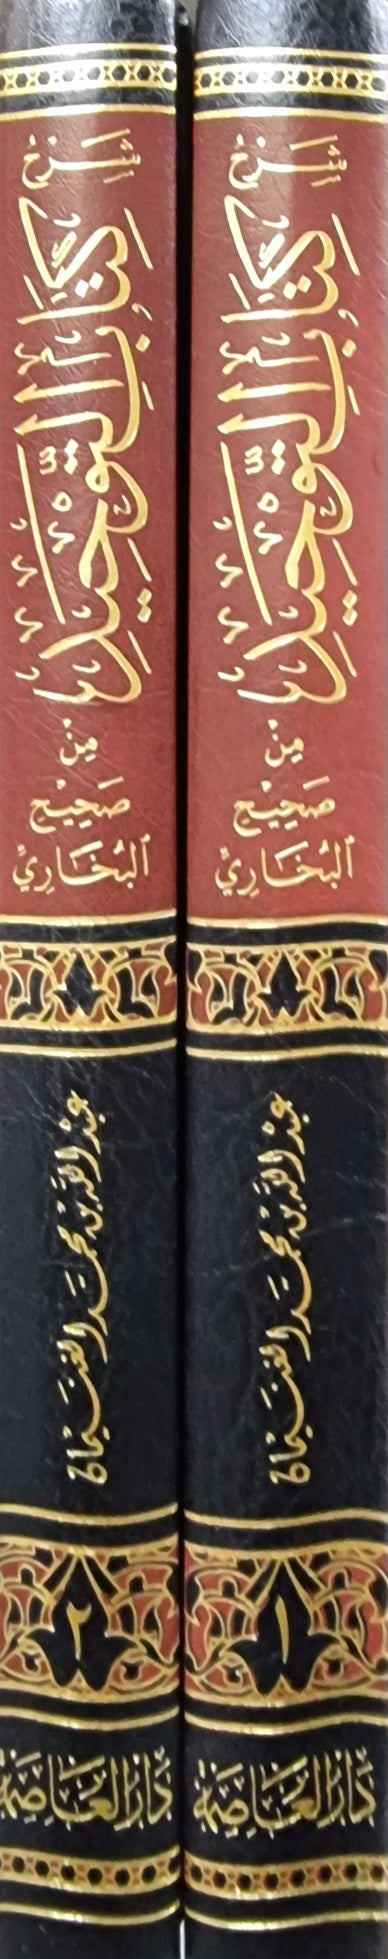 شرح كتاب التوحيد من صحيح البخاري    Sharh Kitab Al Tawhed Min Sahih Muslim (2 Volume Set)